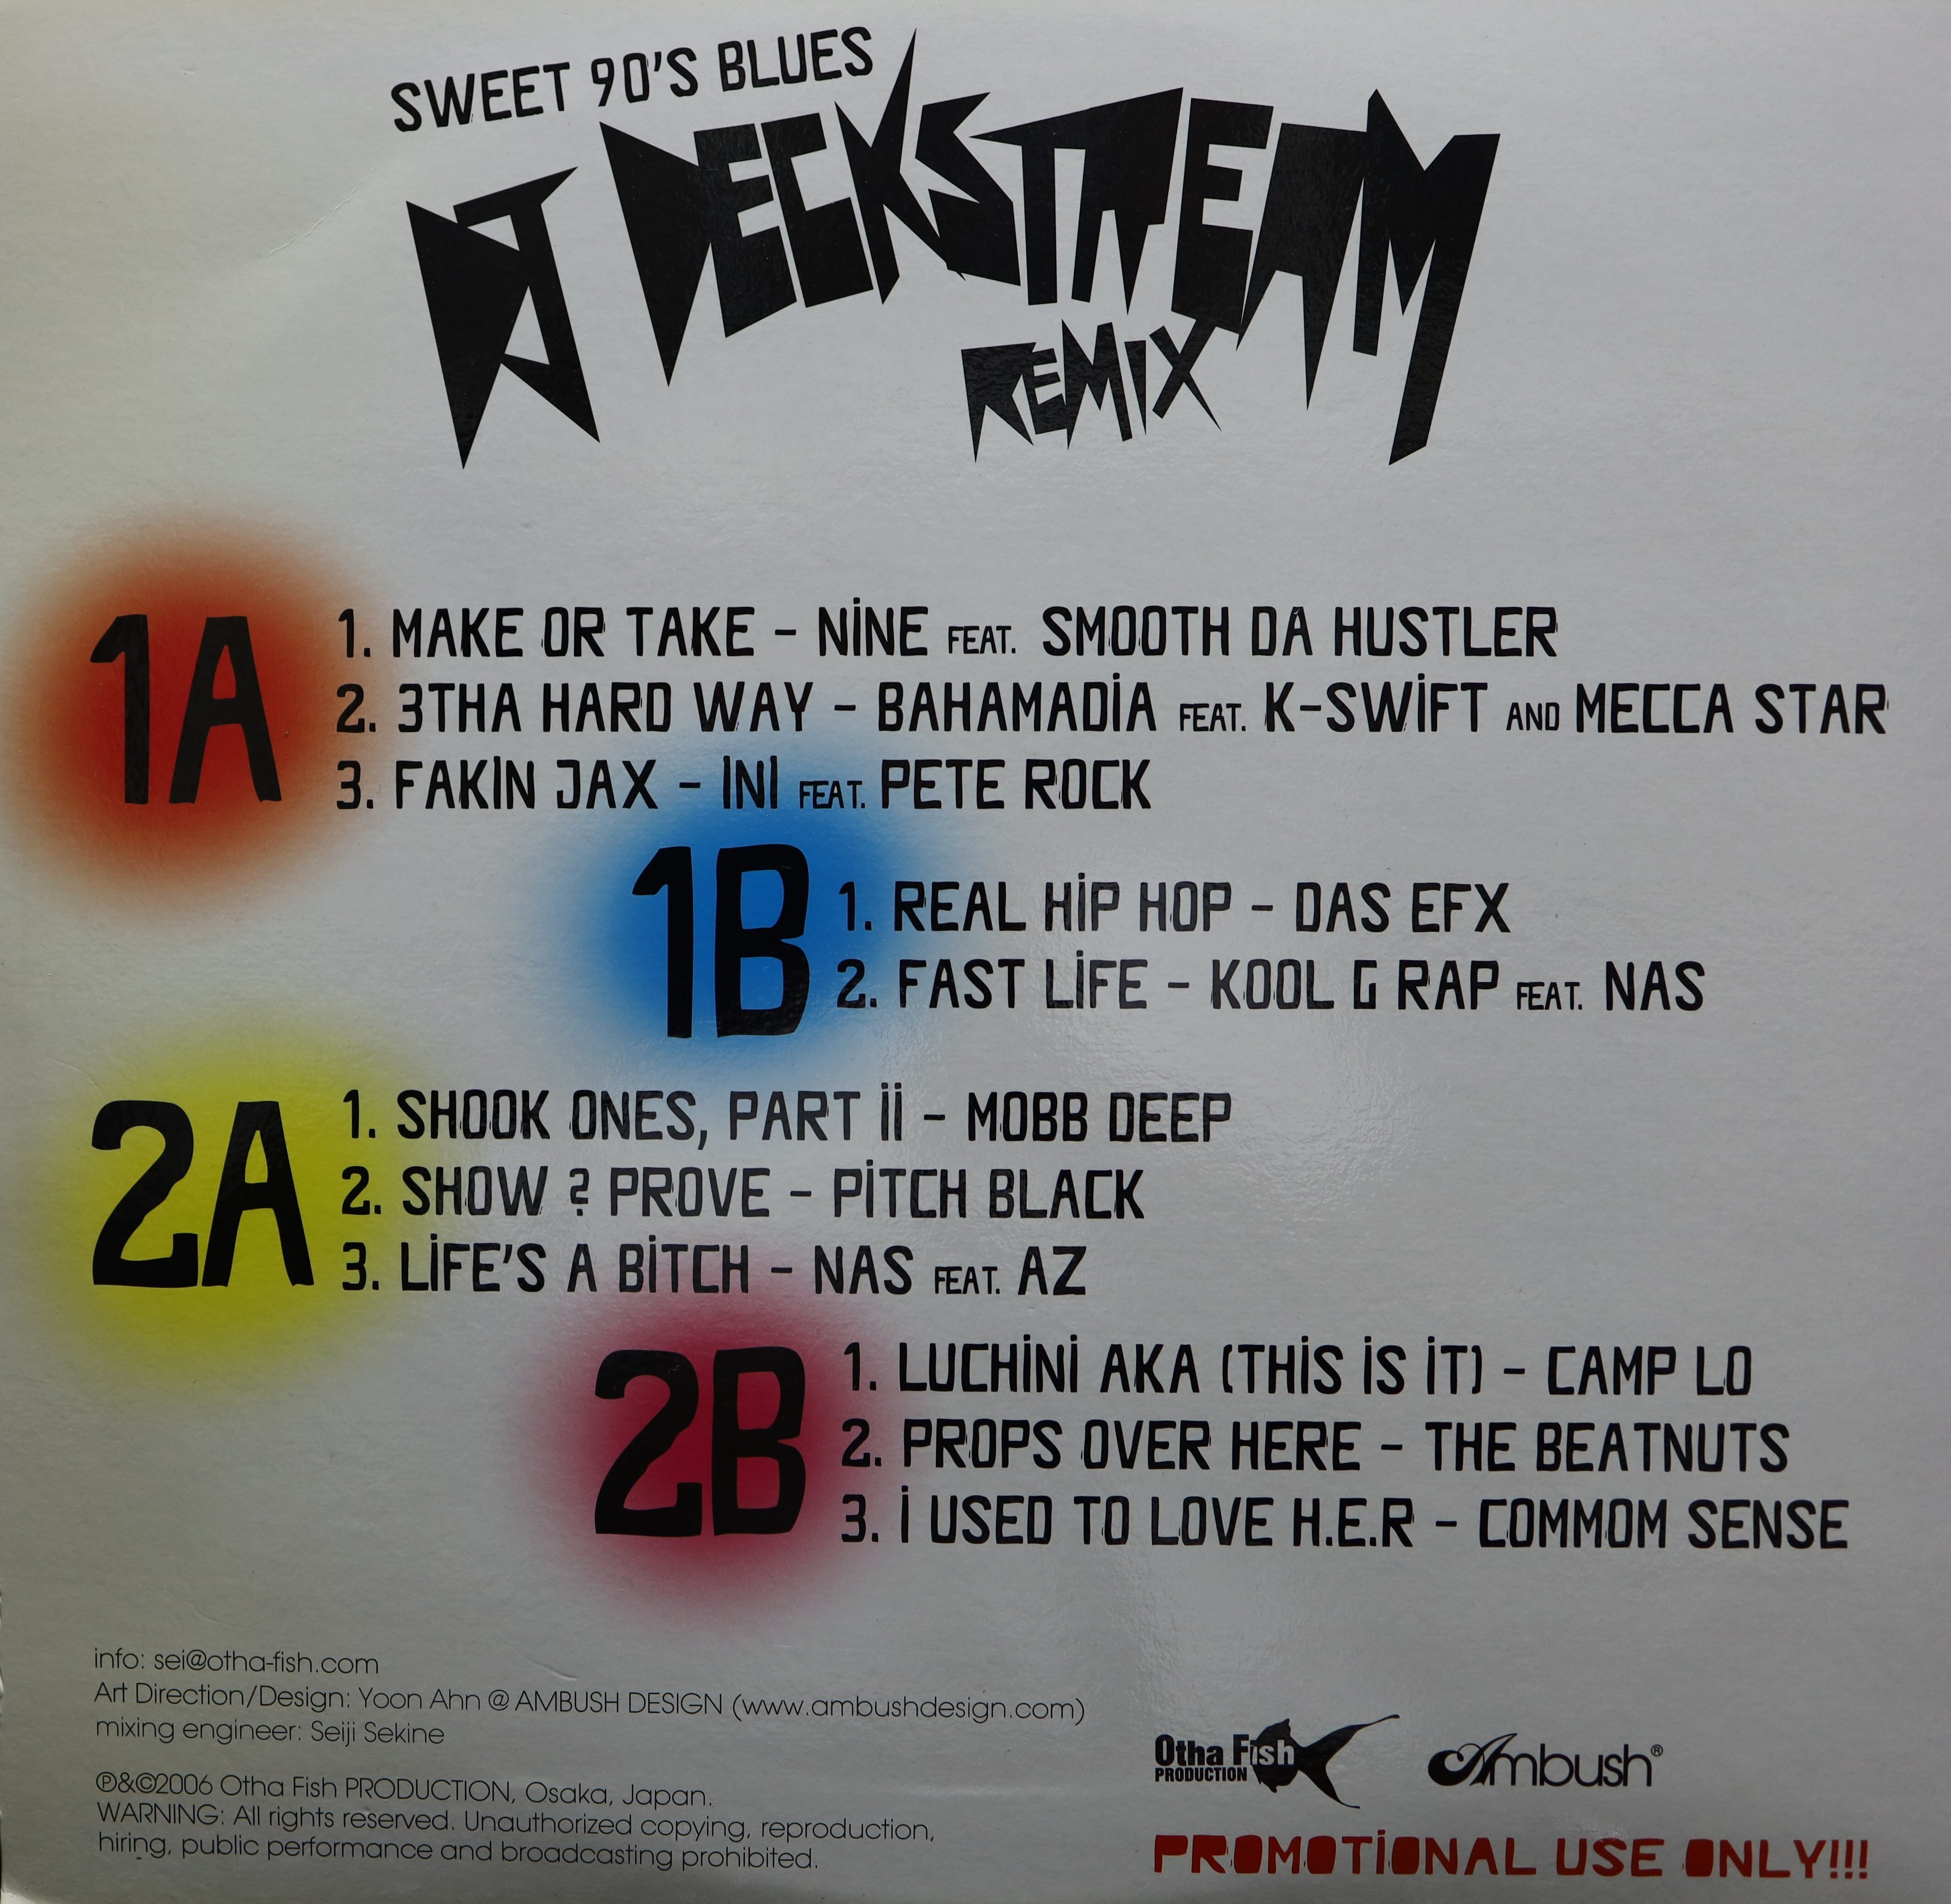 クリアランスsale!期間限定! DJ DECKSTREAM SWEET 90'S BLUES REMIX 